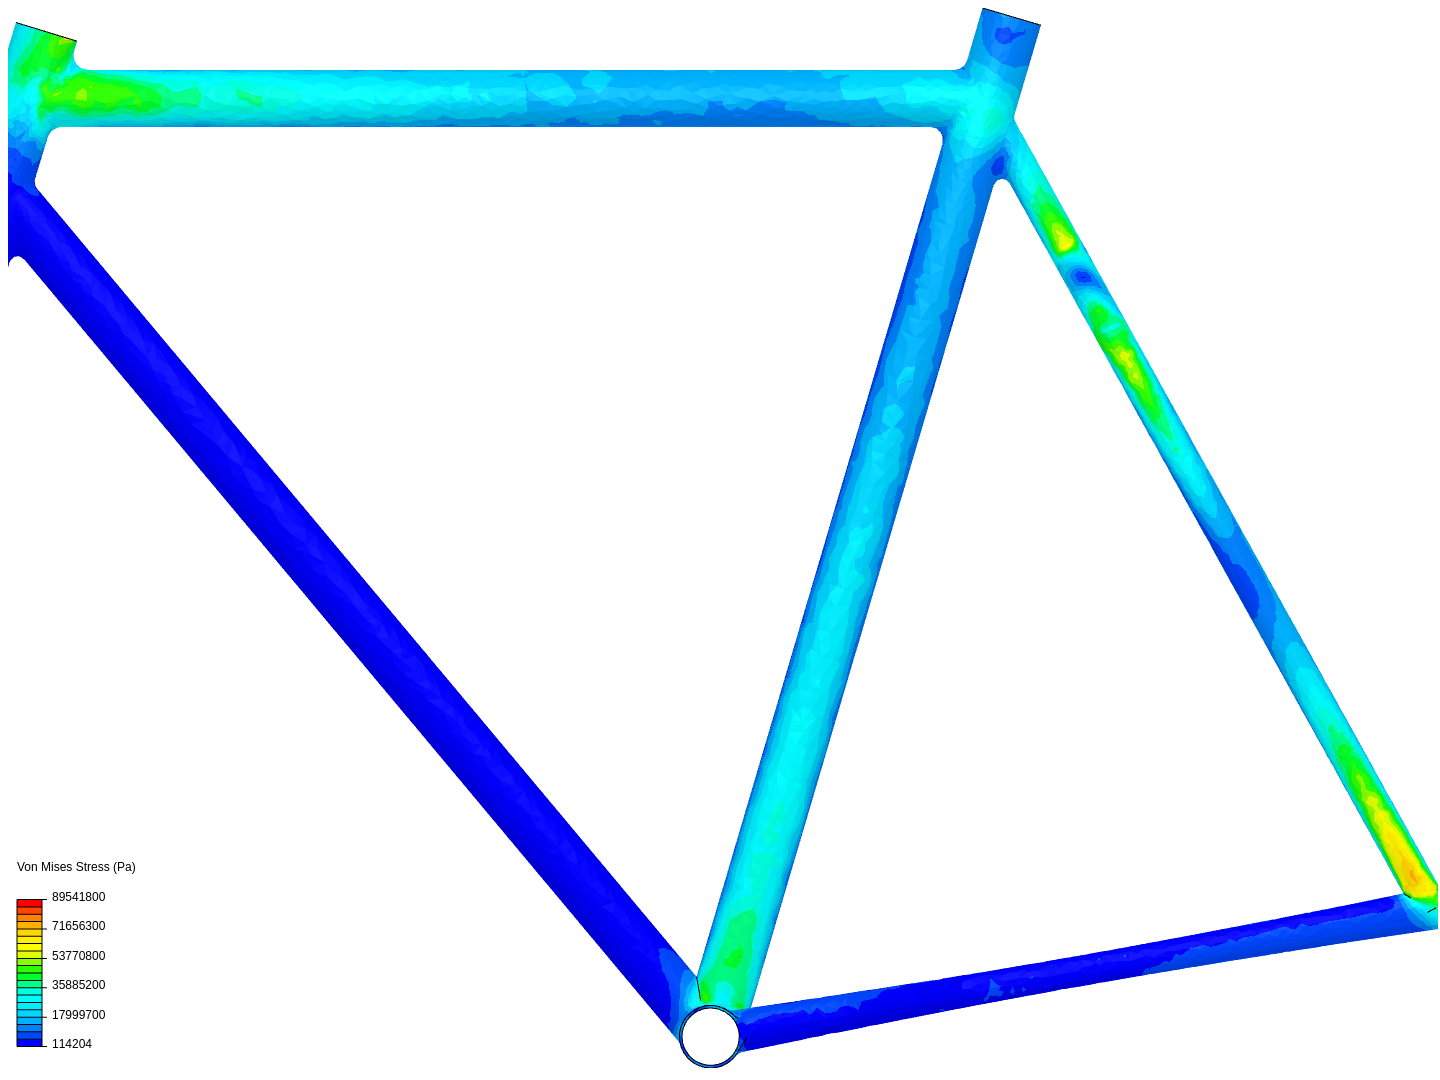 bicycle stress analysis image